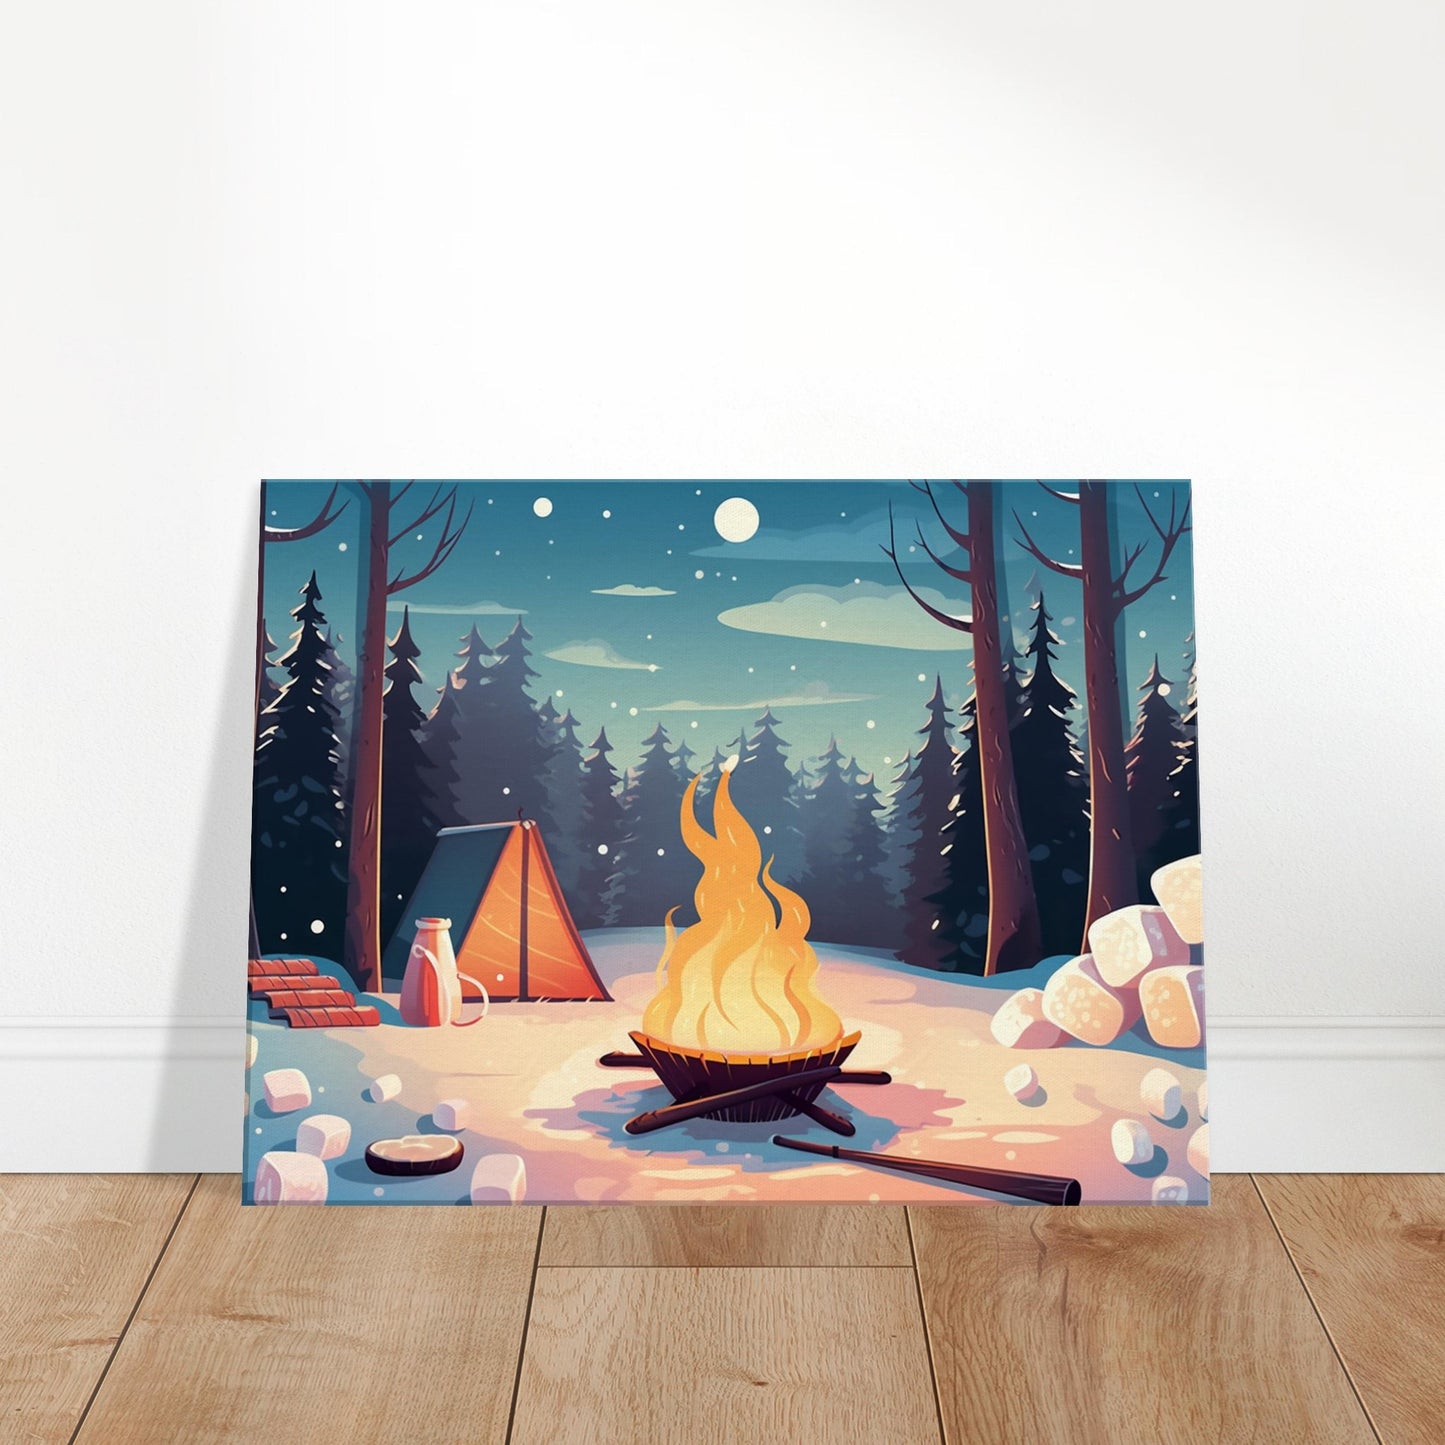 Snowy Solitude. Campfire Warmth